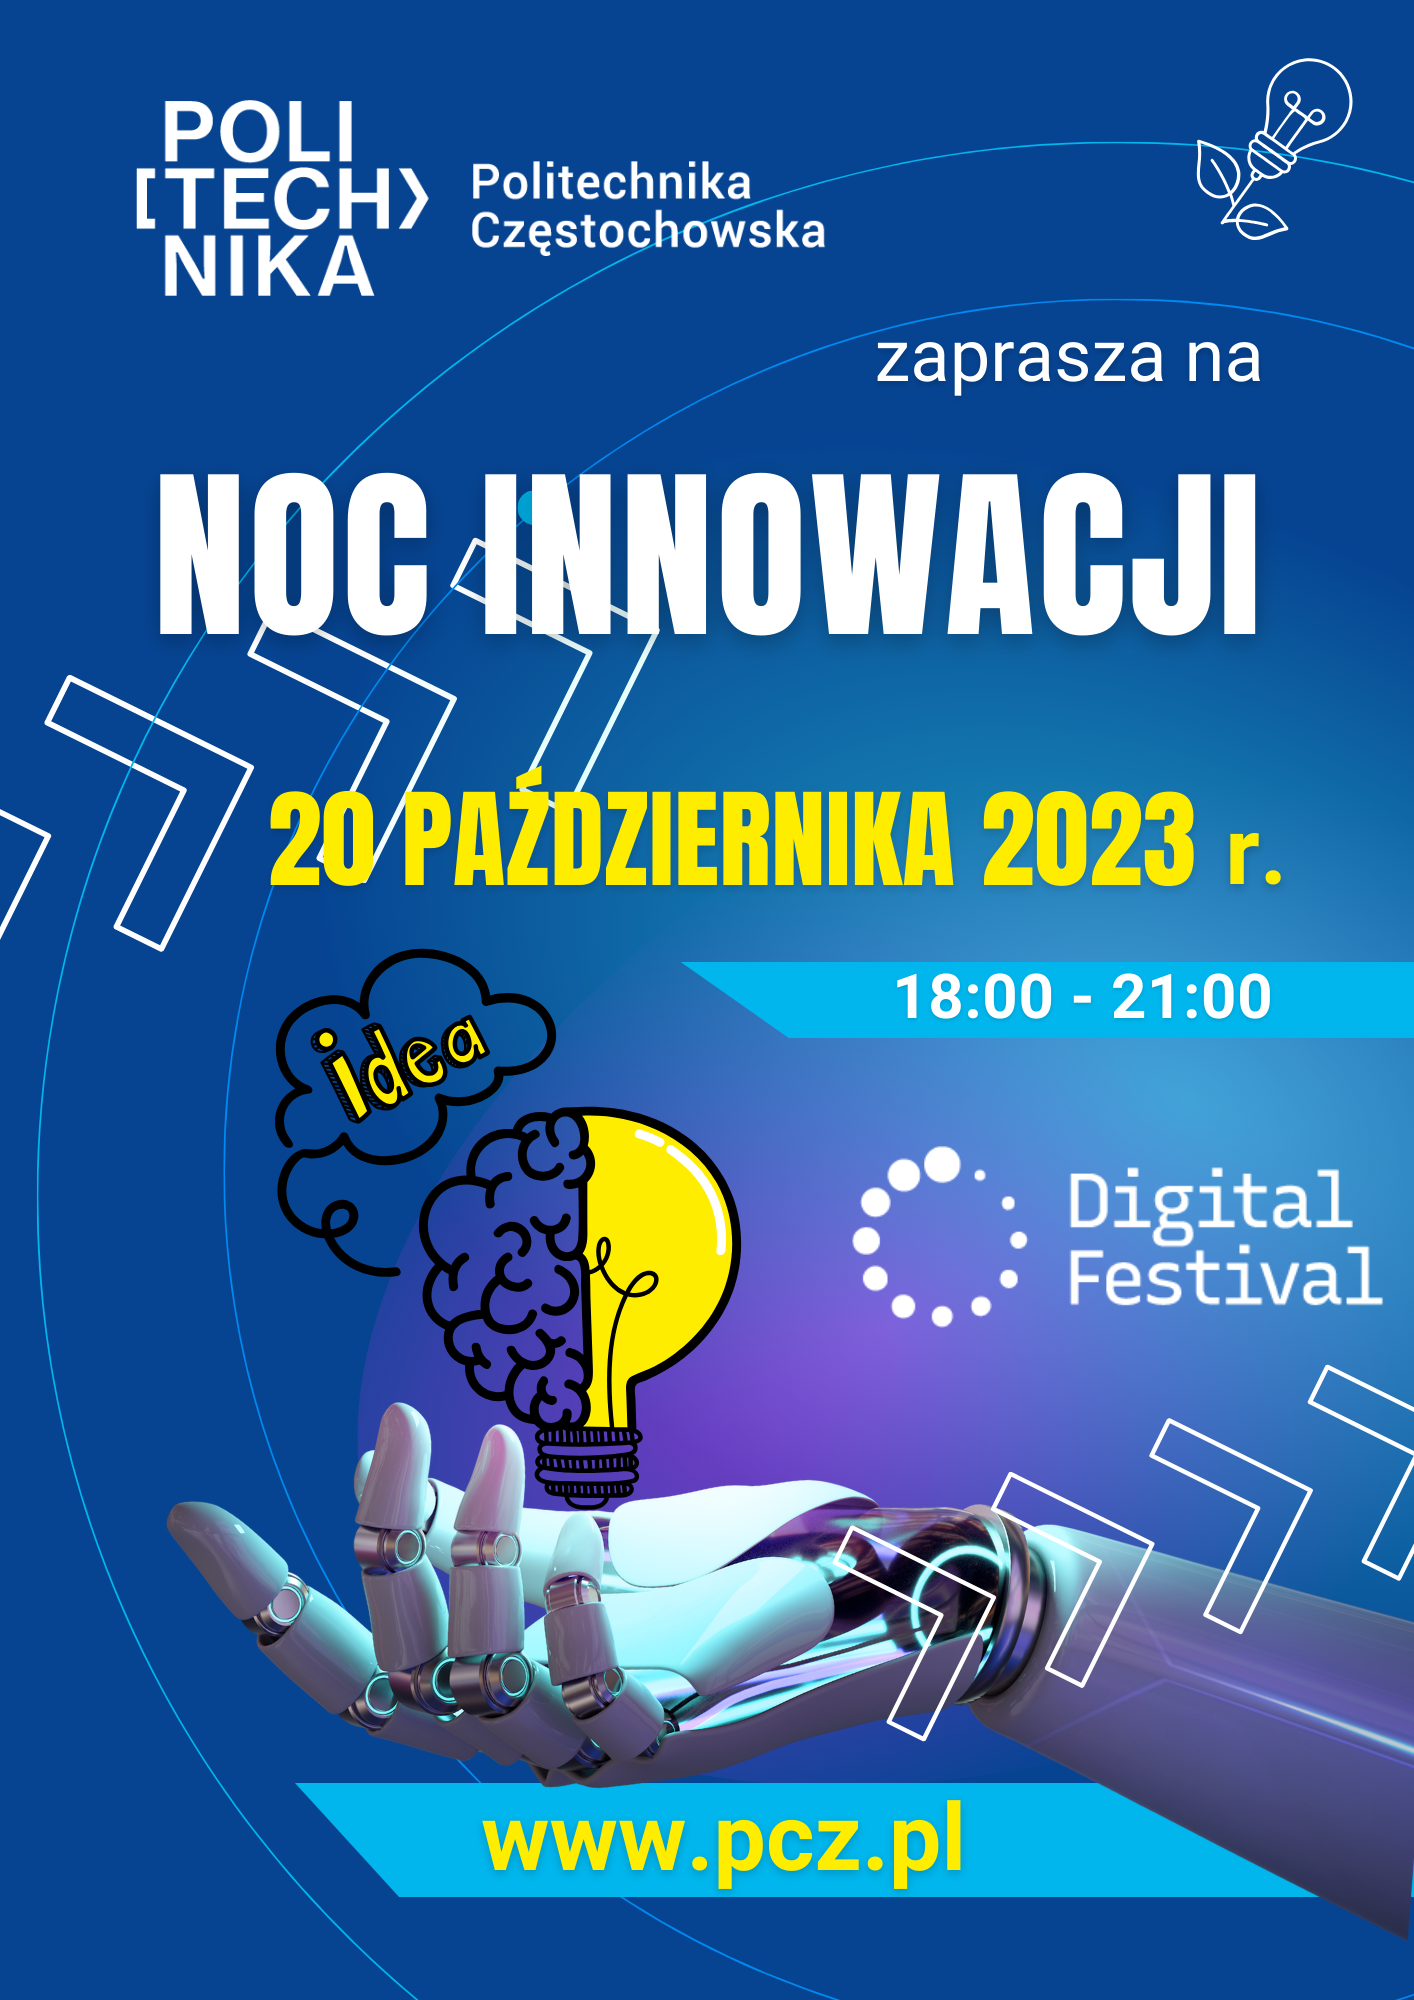 Zapraszamy do udziału w 5. Edycji NOCY INNOWACJI w Politechnice Częstochowskiej.